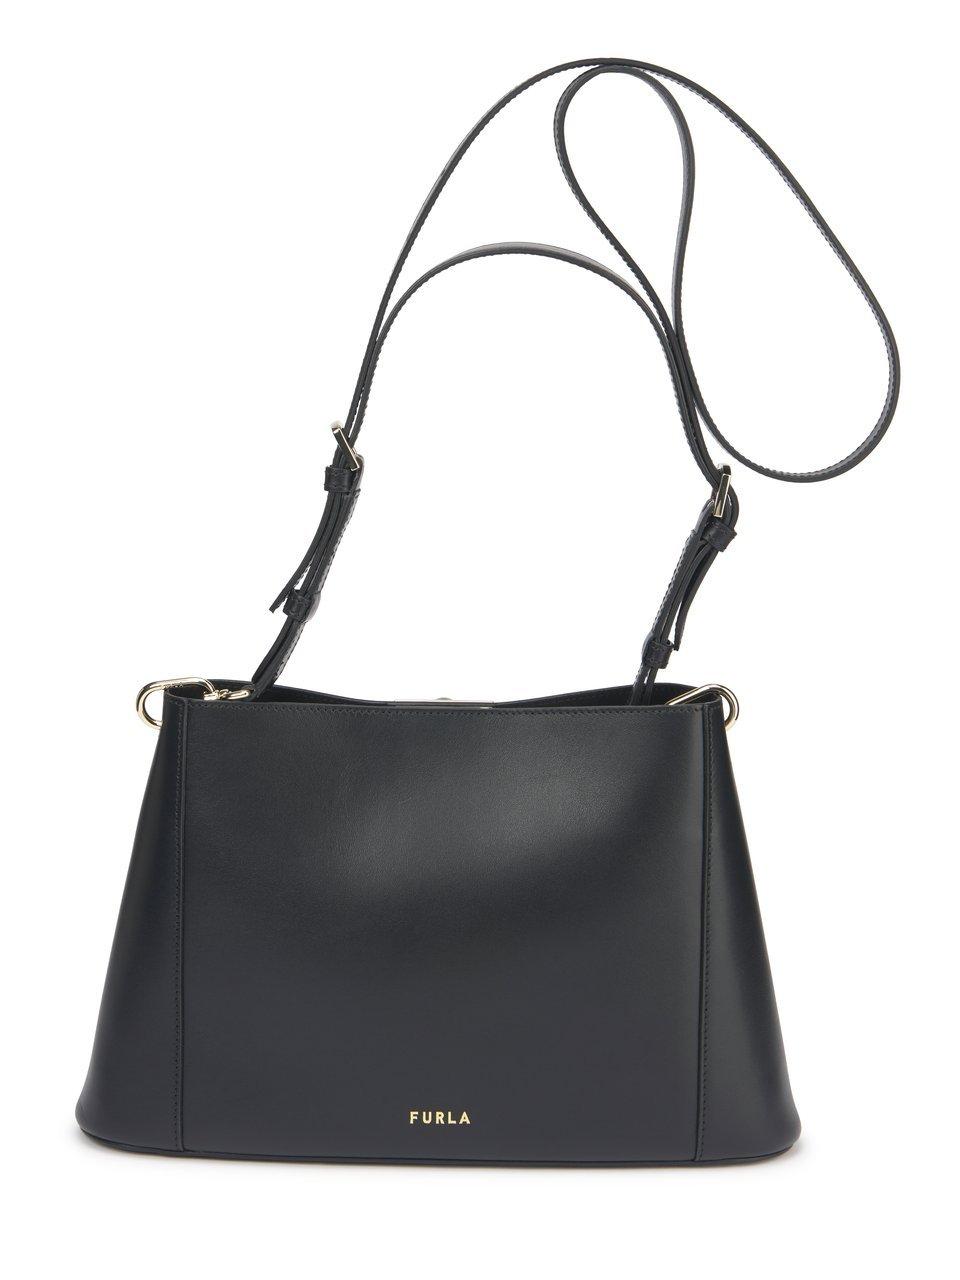 Image of Hand bag “Fleur“ Furla black